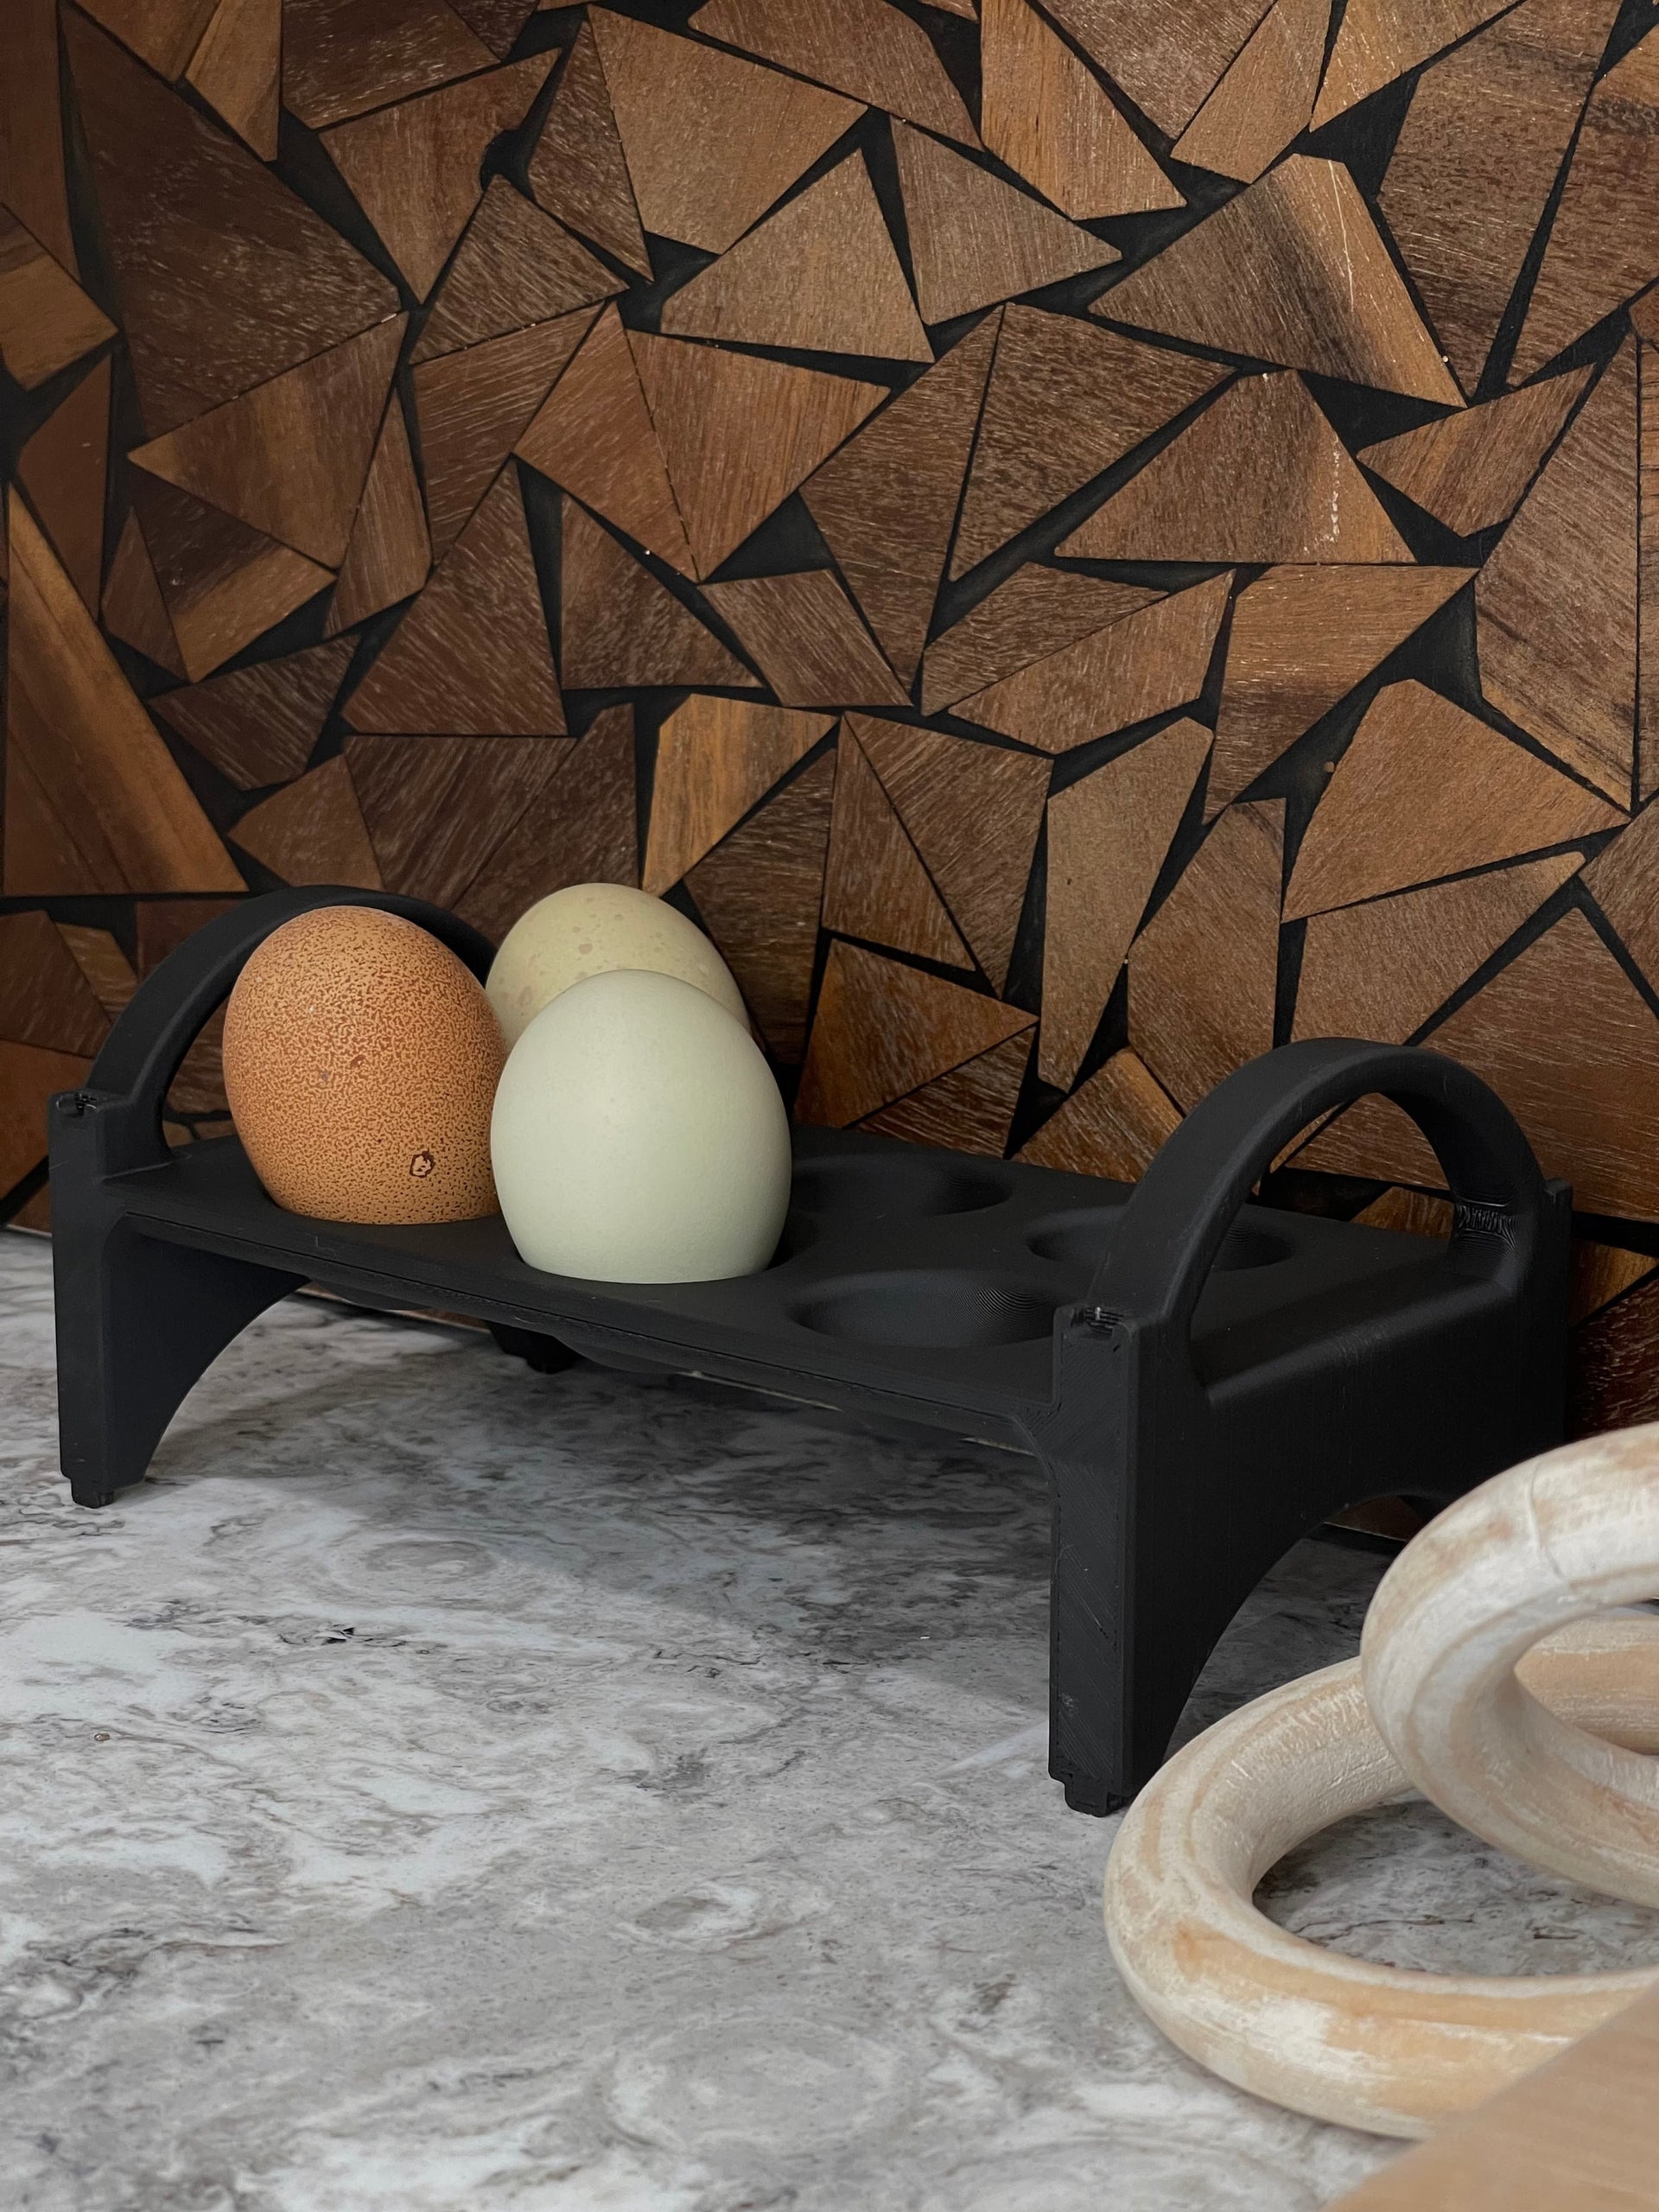 qazqa egg holder countertop egg storage egg baskets for fresh eggs